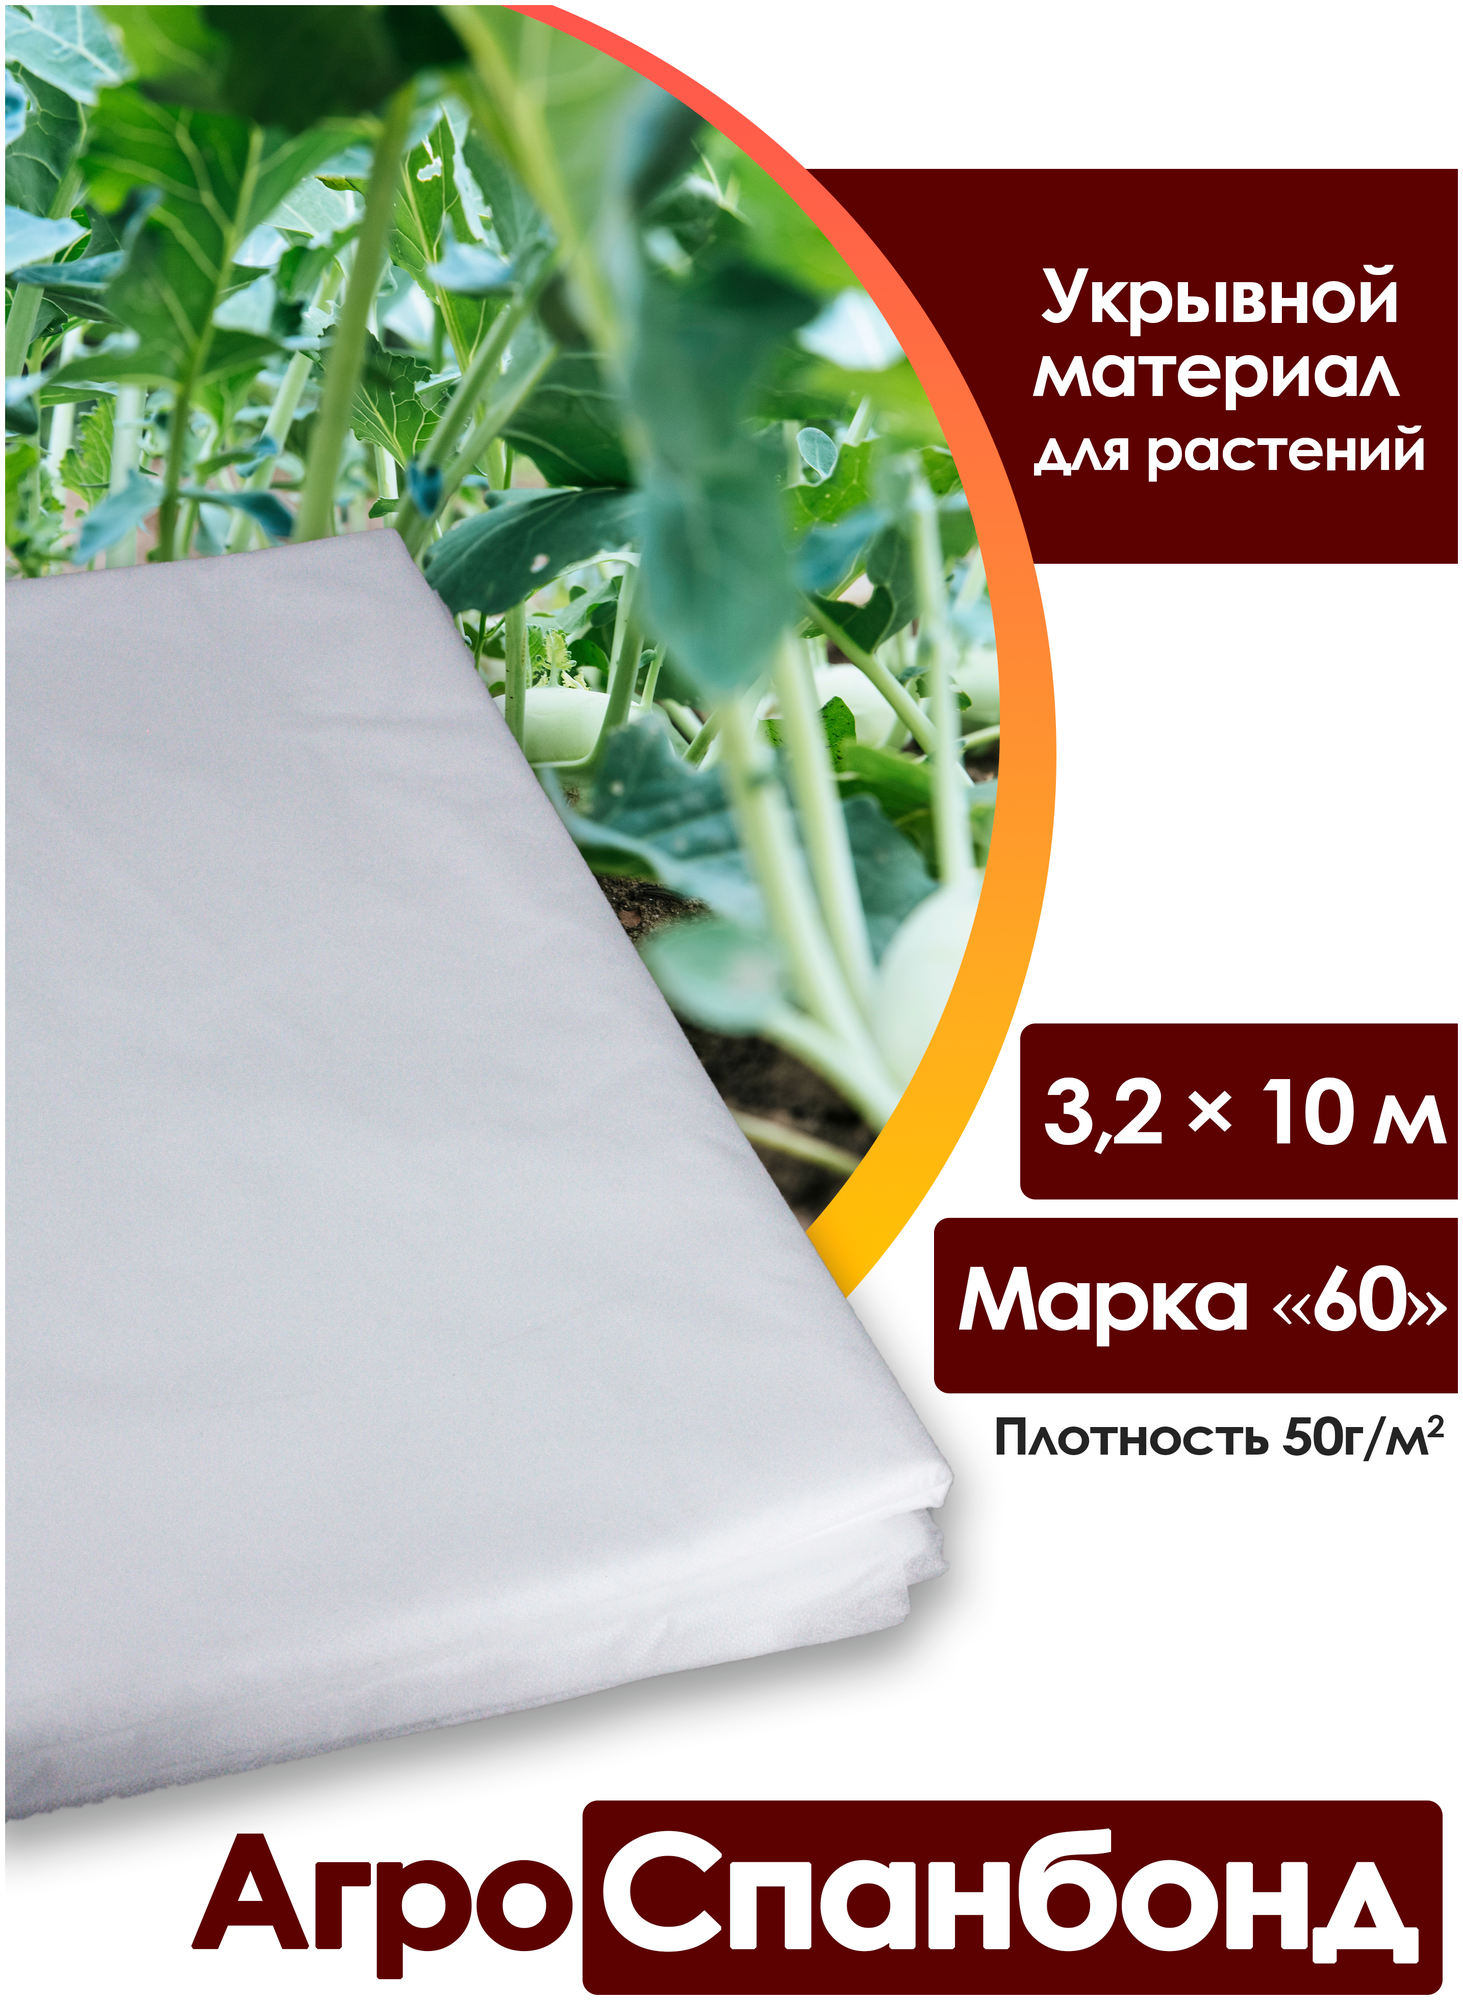 Body Pillow Спанбонд укрывной 32х10 м плотностью 50 г/м2 Марка "60" / Агротекстиль для теплиц растений / Нетканый укрывной материал